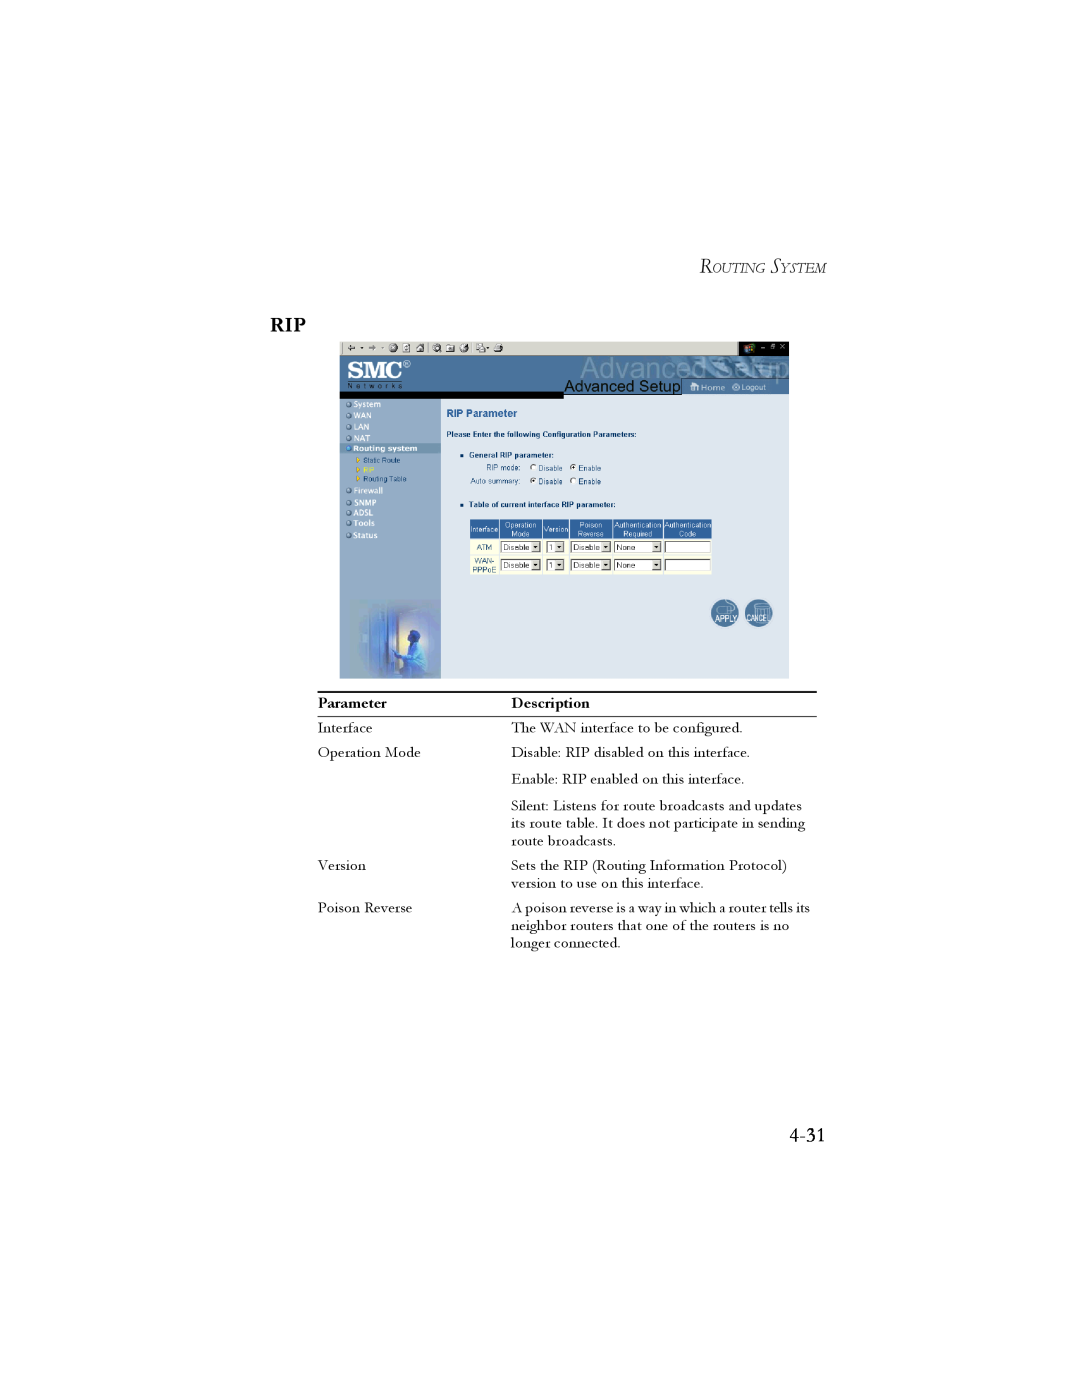 SMC Networks SMC7404BRA EU manual 4-31, Parameter, Description 